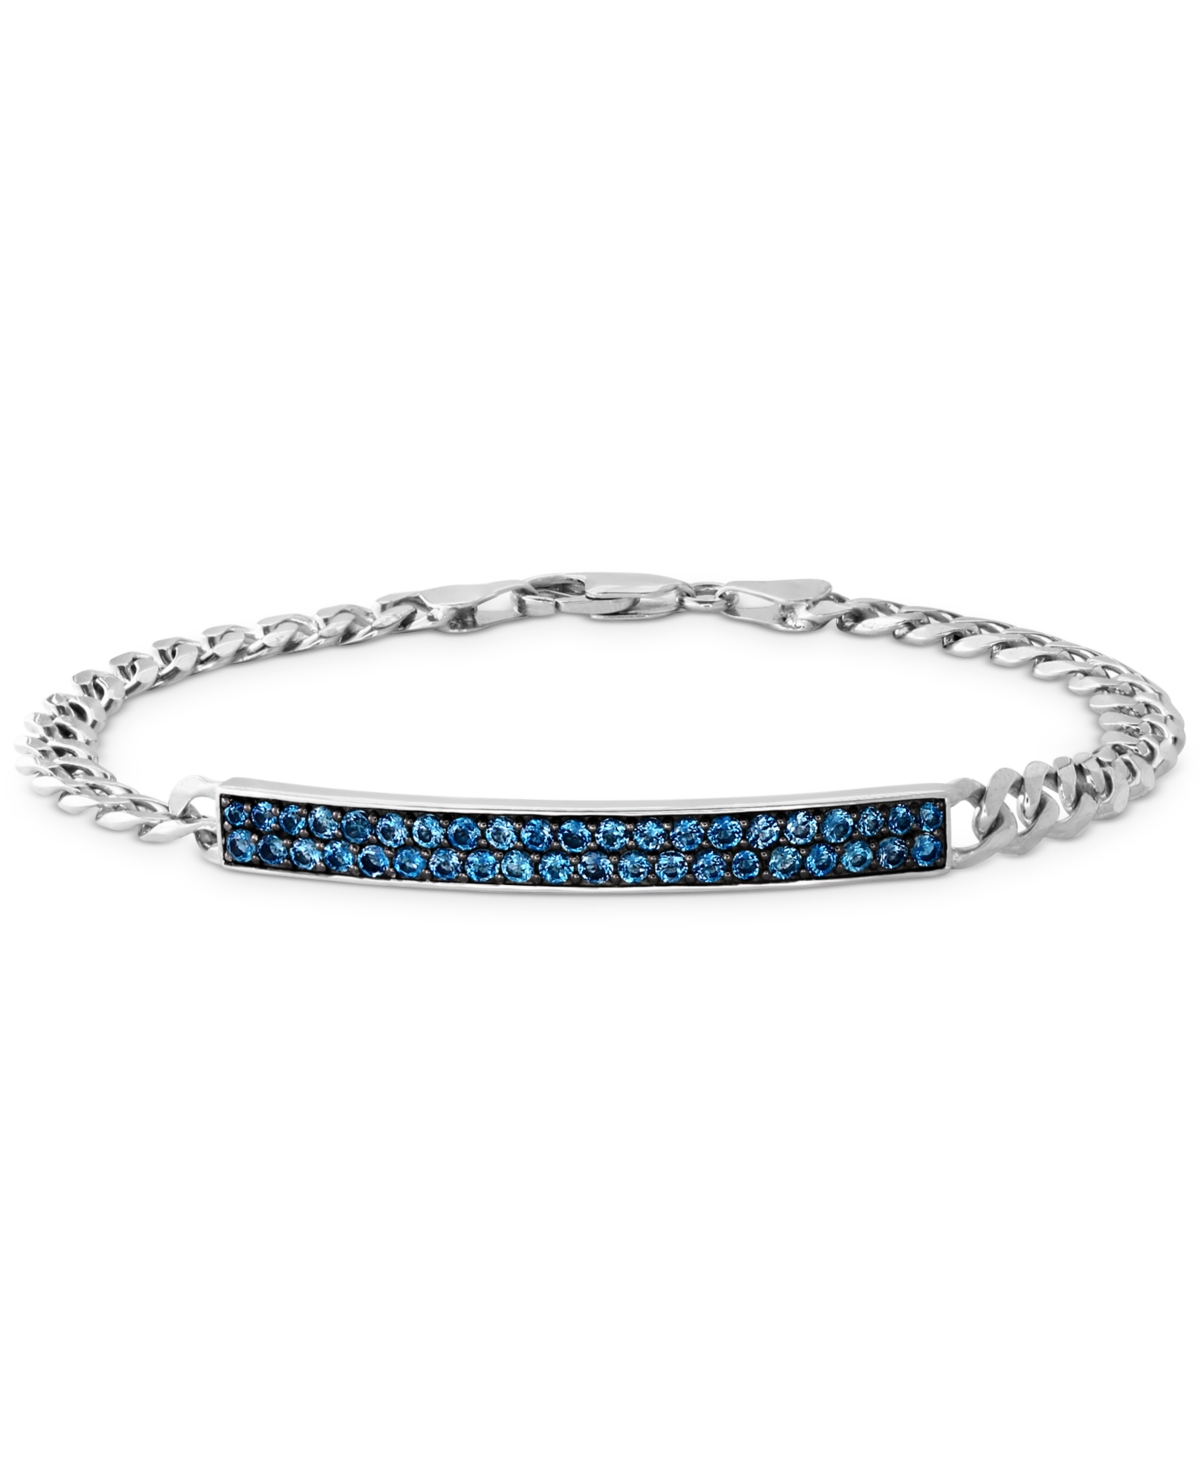 Effy Men's London Blue Topaz (2-1/4 ct. t.w.) Bracelet in Sterling Silver - Sterling Silver